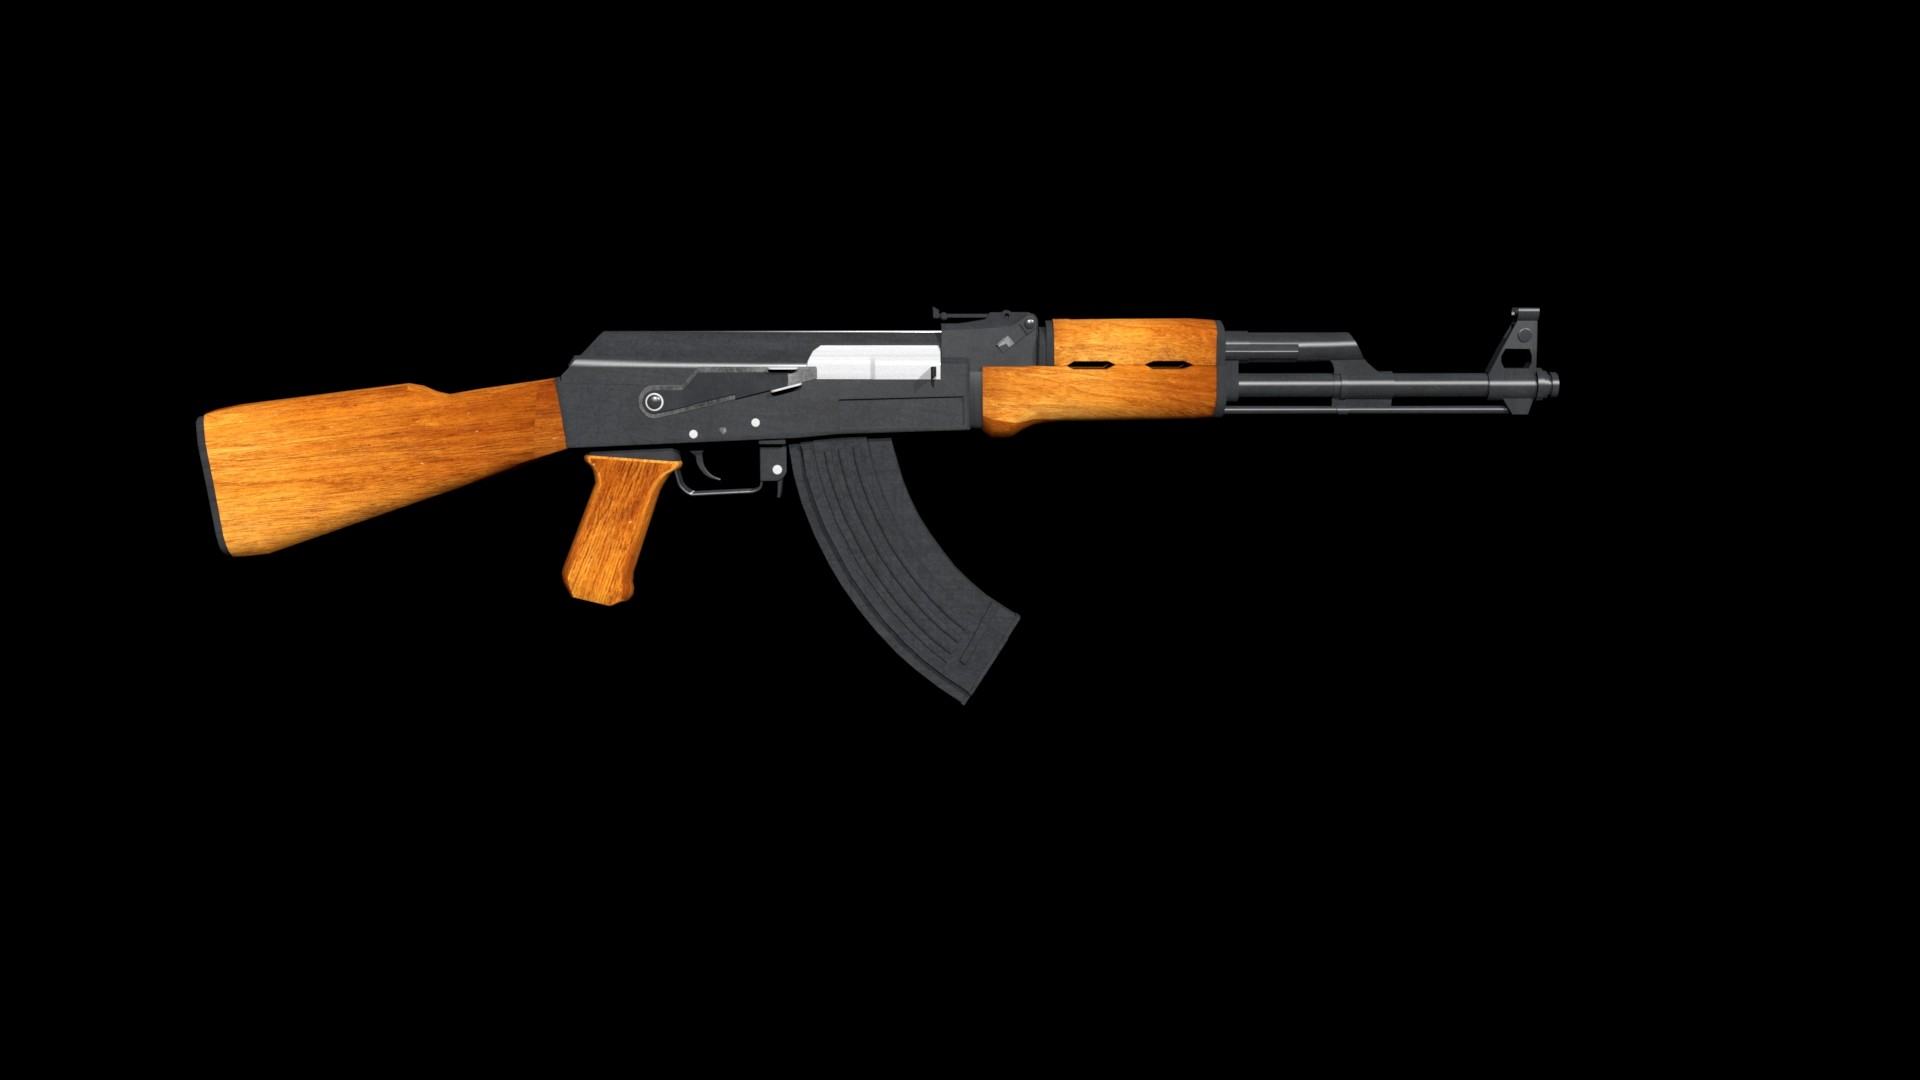 Mô hình súng AK-47 của Keshawn Jenkins: Với đam mê và tài năng, Keshawn Jenkins đã tạo ra một mô hình súng AK-47 cực kì chân thật và đẹp mắt. Hãy chiêm ngưỡng những hình ảnh đầy sự chính xác và sự tinh tế của mô hình súng AK-47 này và cảm nhận tình yêu và nhiệt huyết mà tác phẩm này mang lại.